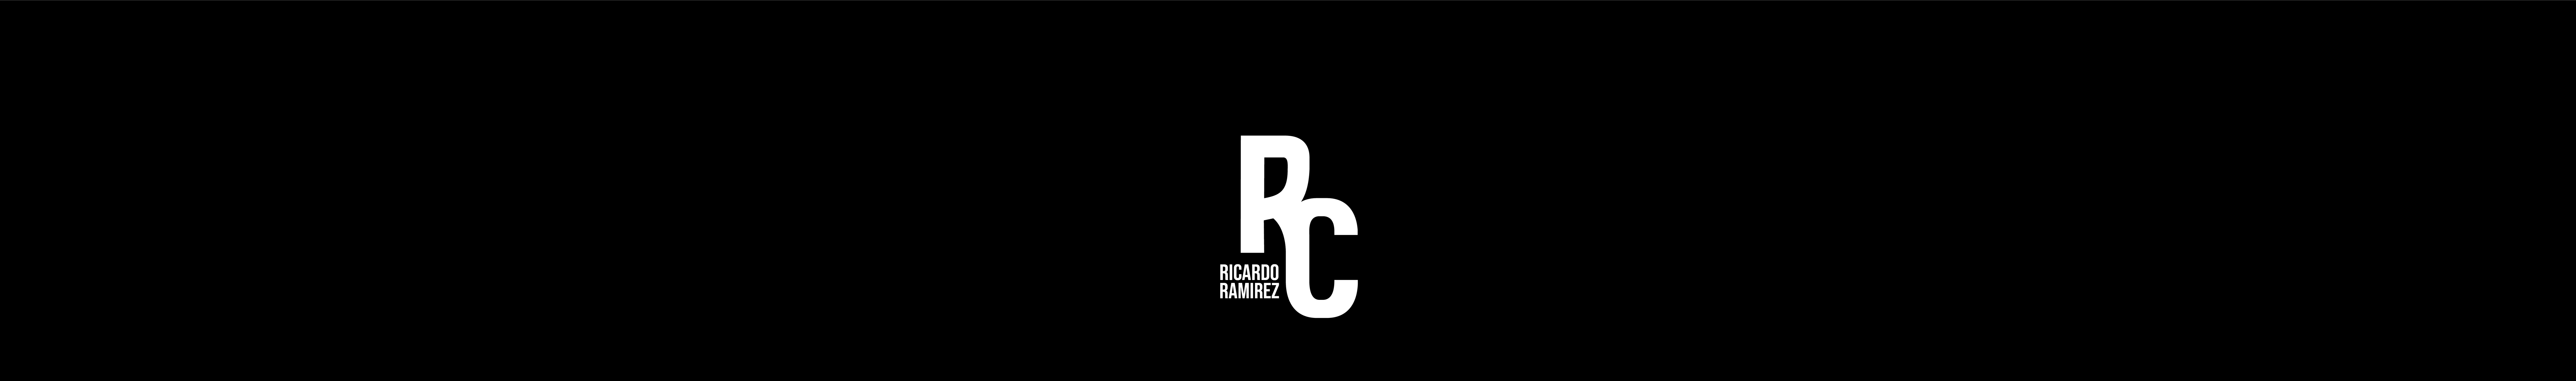 Ricardo Ramirez 的个人资料横幅